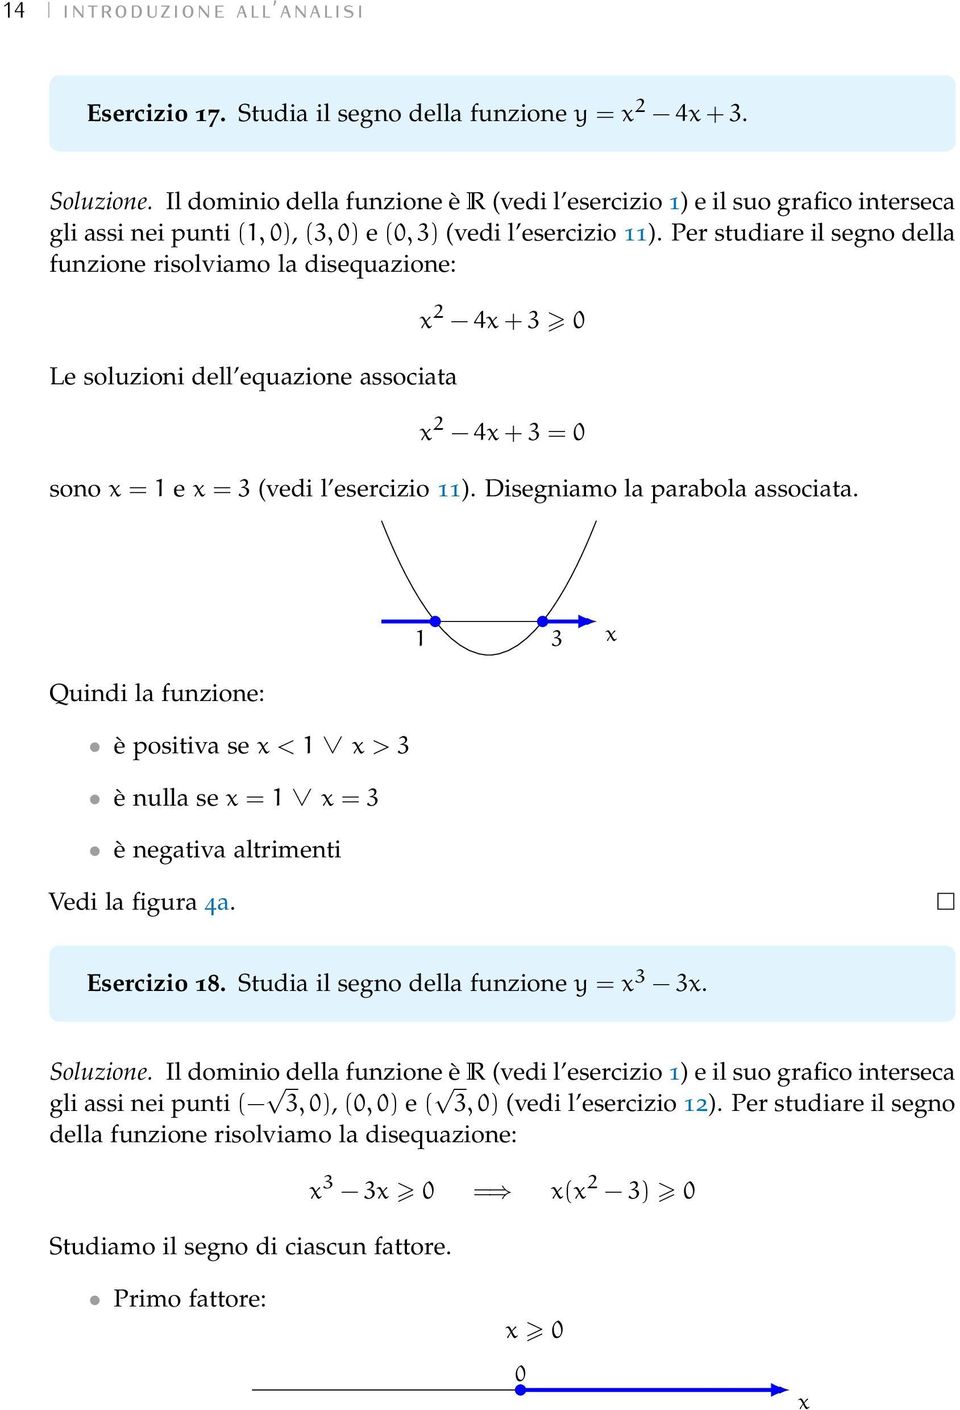 Per studiare il segno della funzione risolviamo la disequazione: Le soluzioni dell equazione associata 2 4 + 3 0 2 4 + 3 = 0 sono = 1 e = 3 (vedi l esercizio 11). Disegniamo la parabola associata.